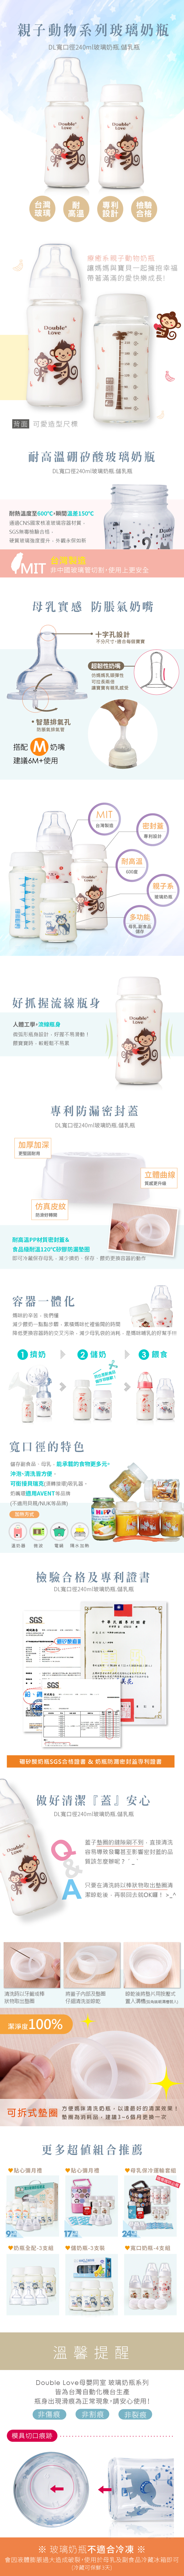 玻璃奶瓶 DL台灣專利 玻璃奶瓶 母乳儲存瓶二合一 240ML 寬口大猴 母乳儲存瓶 副食品【EA0039】